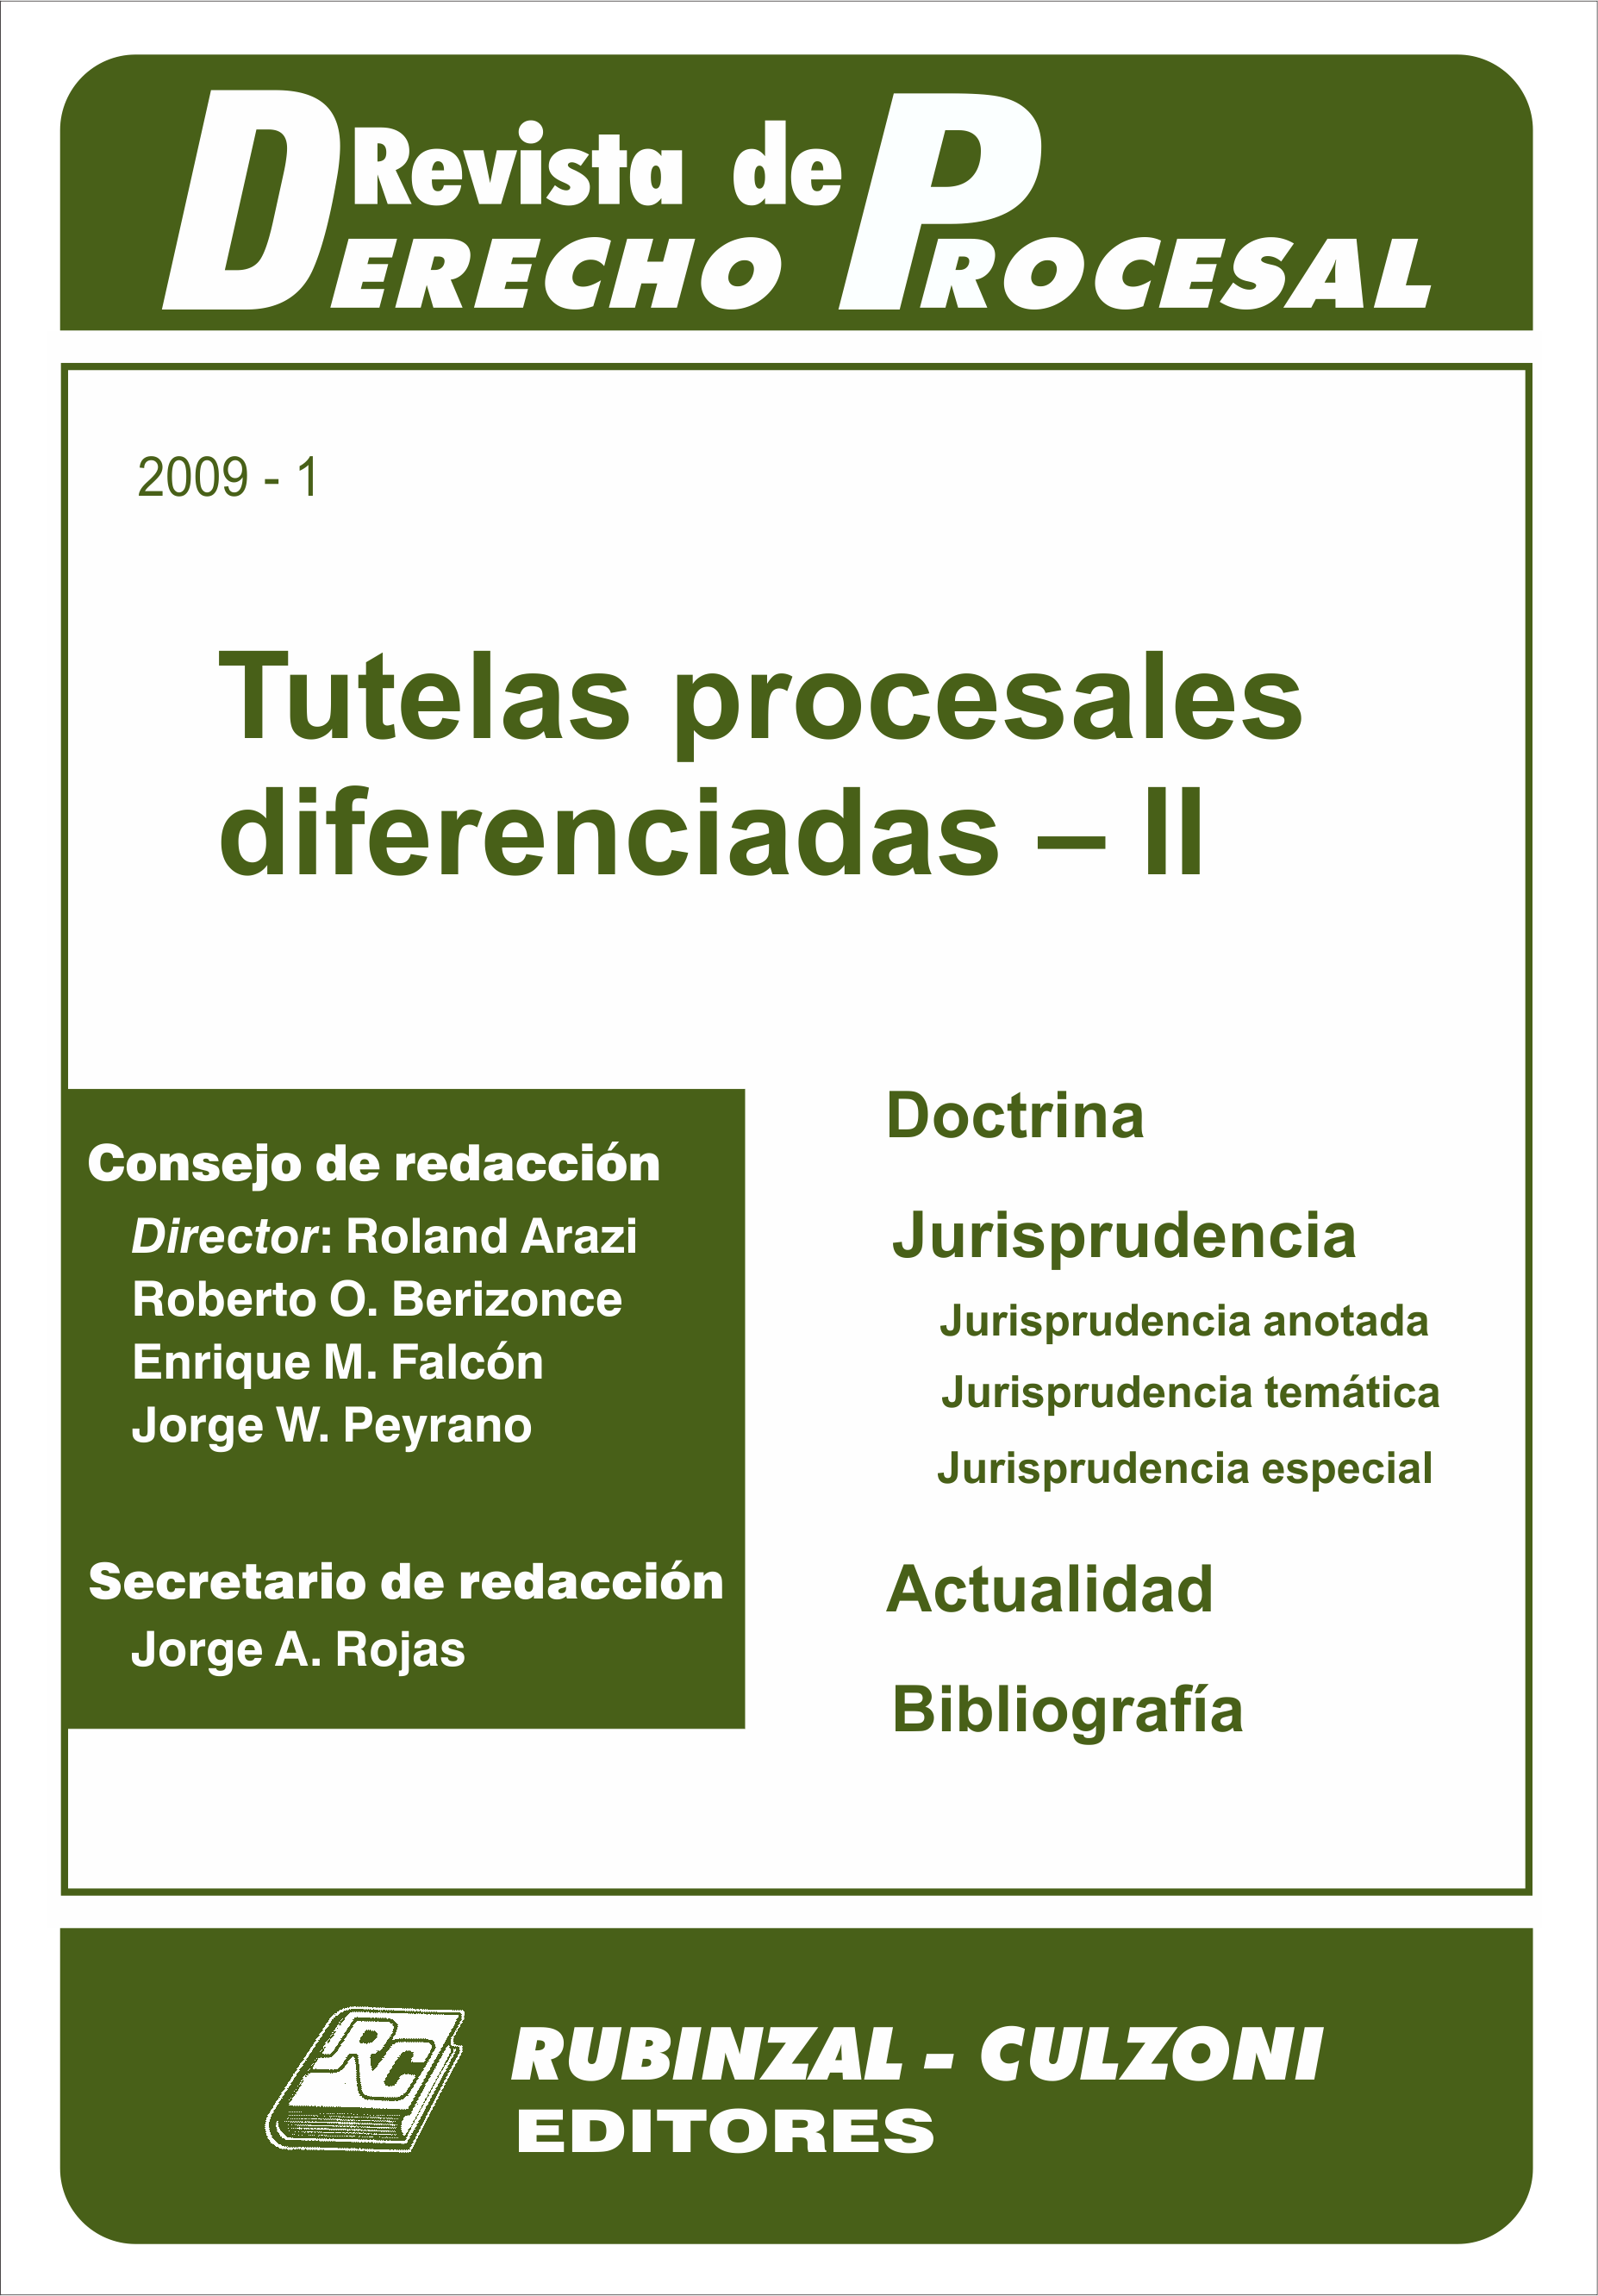 Revista de Derecho Procesal - Tutelas procesales diferenciadas - II